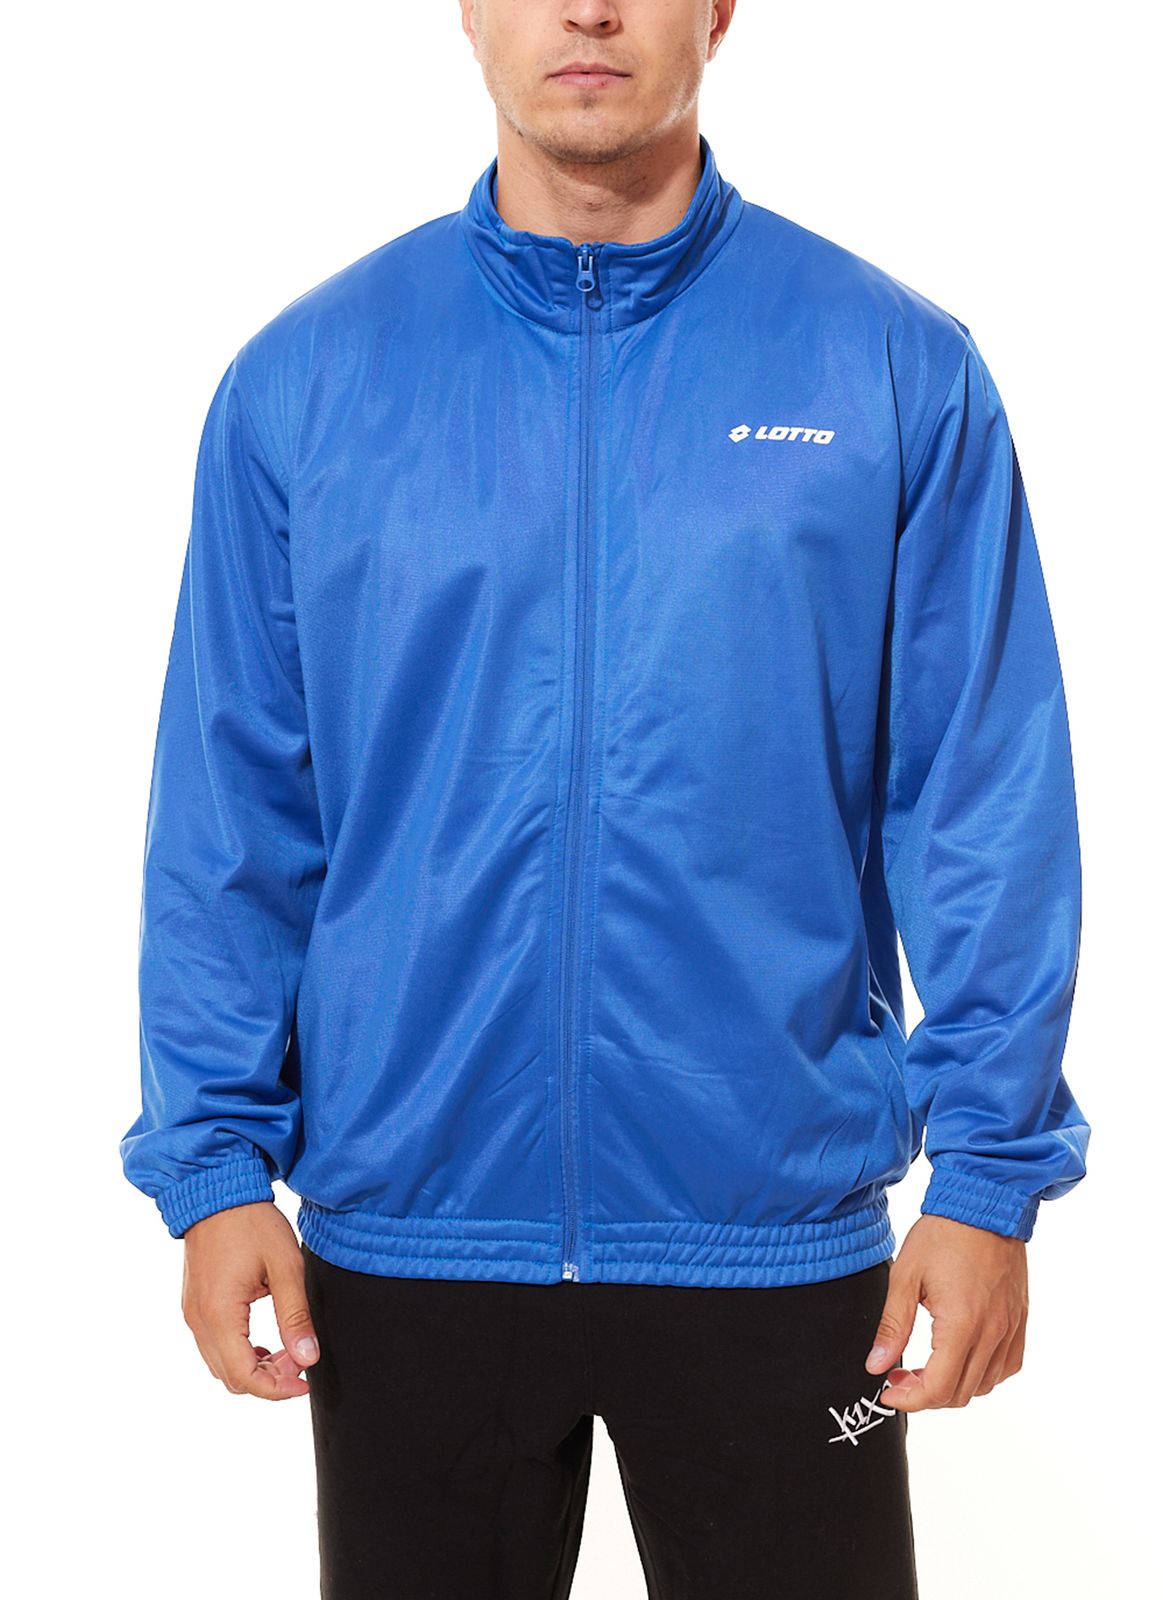 LOTTO Herren Sweat-Jacke mit durchgehendem Reißverschluss Trainings-Jacke MTGW10007PEN Blau von LOTTO